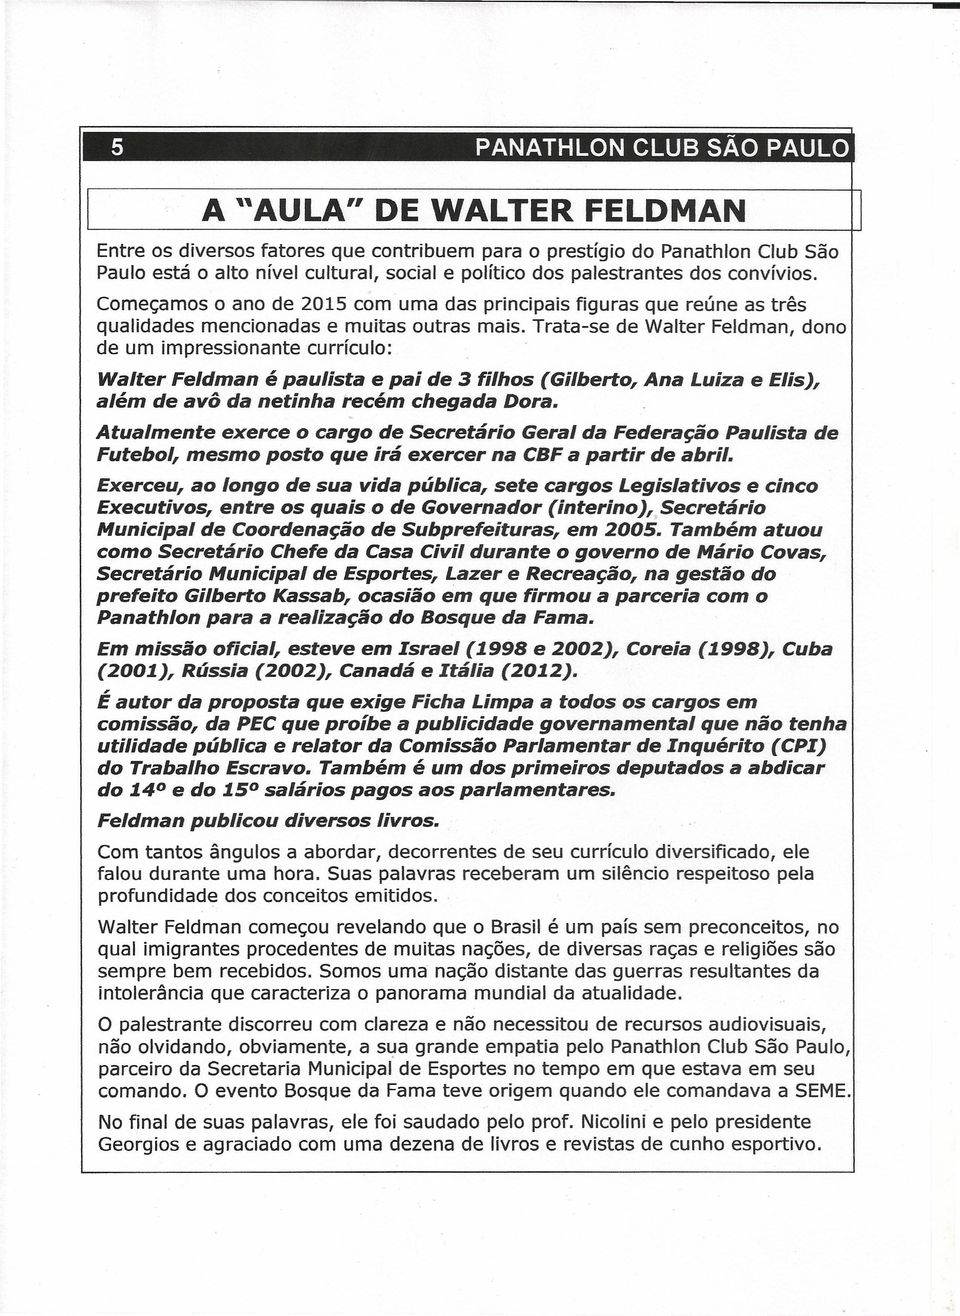 Trata-se de Walter Feldman, dono de um impressionante currículo: Walter Feldman é paulista e pai de 3 filhos (Gilberto, Ana Luiza e Elis), além de avô da netinha recém chegada Dora.